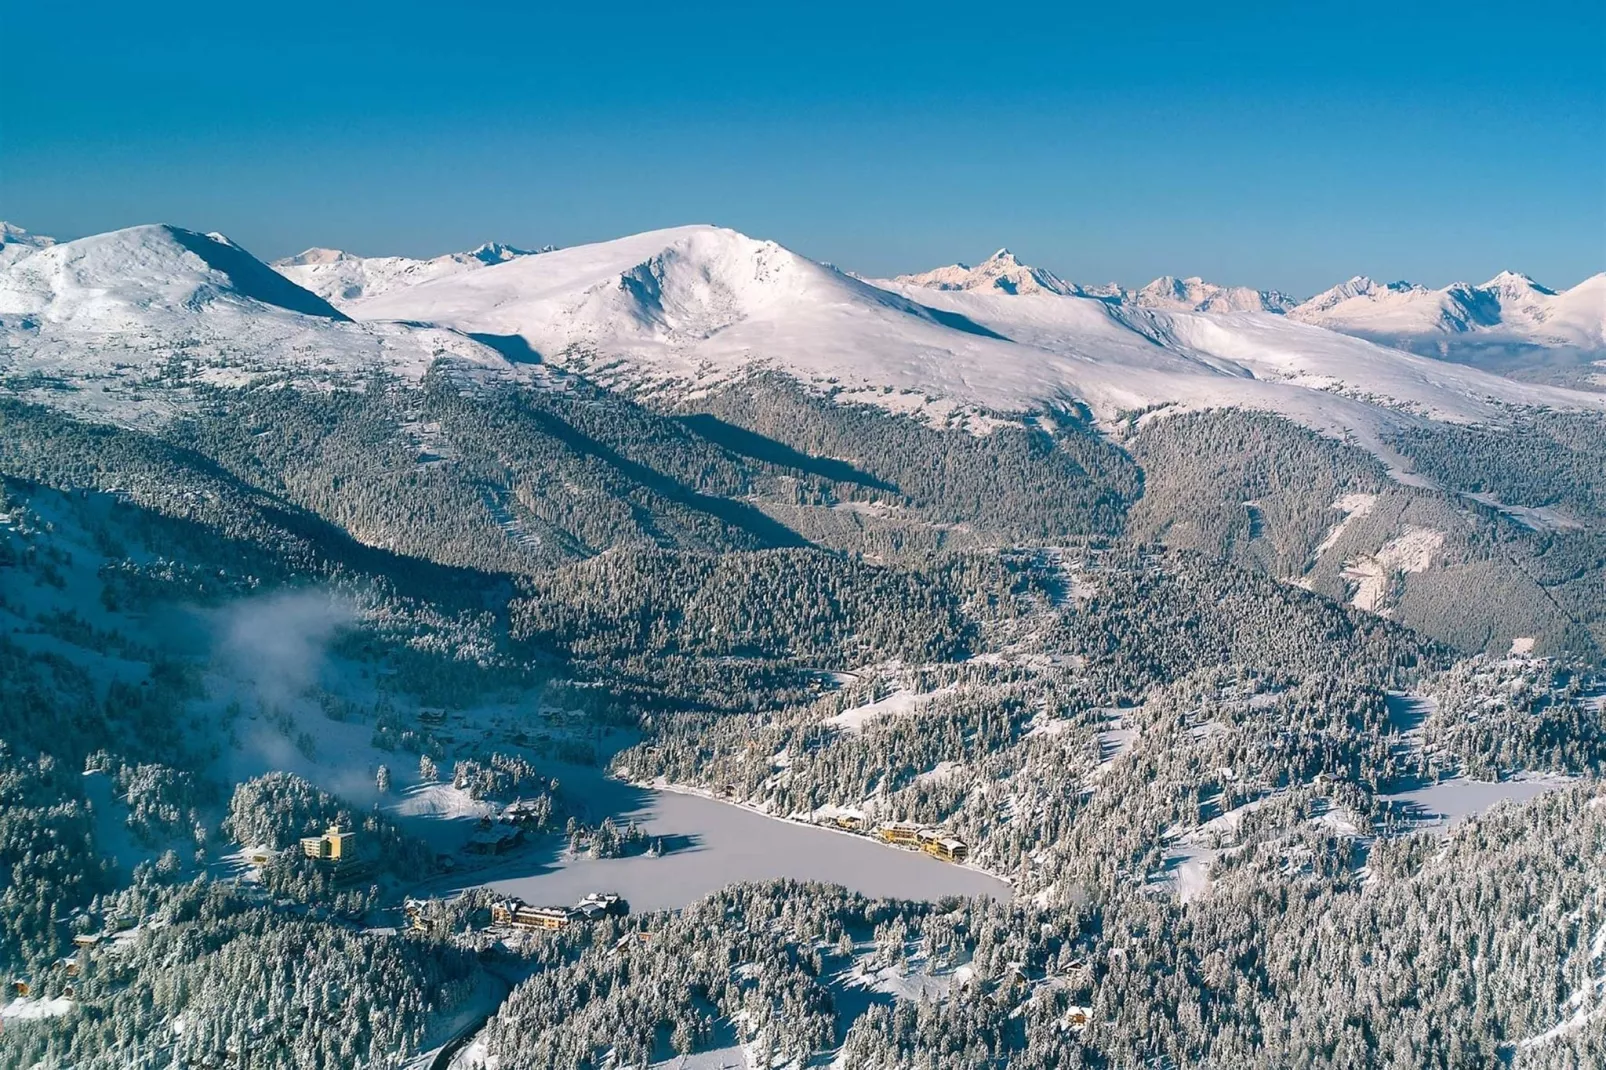 Alpenpark Turrach Chalets 3-Gebied winter 20km